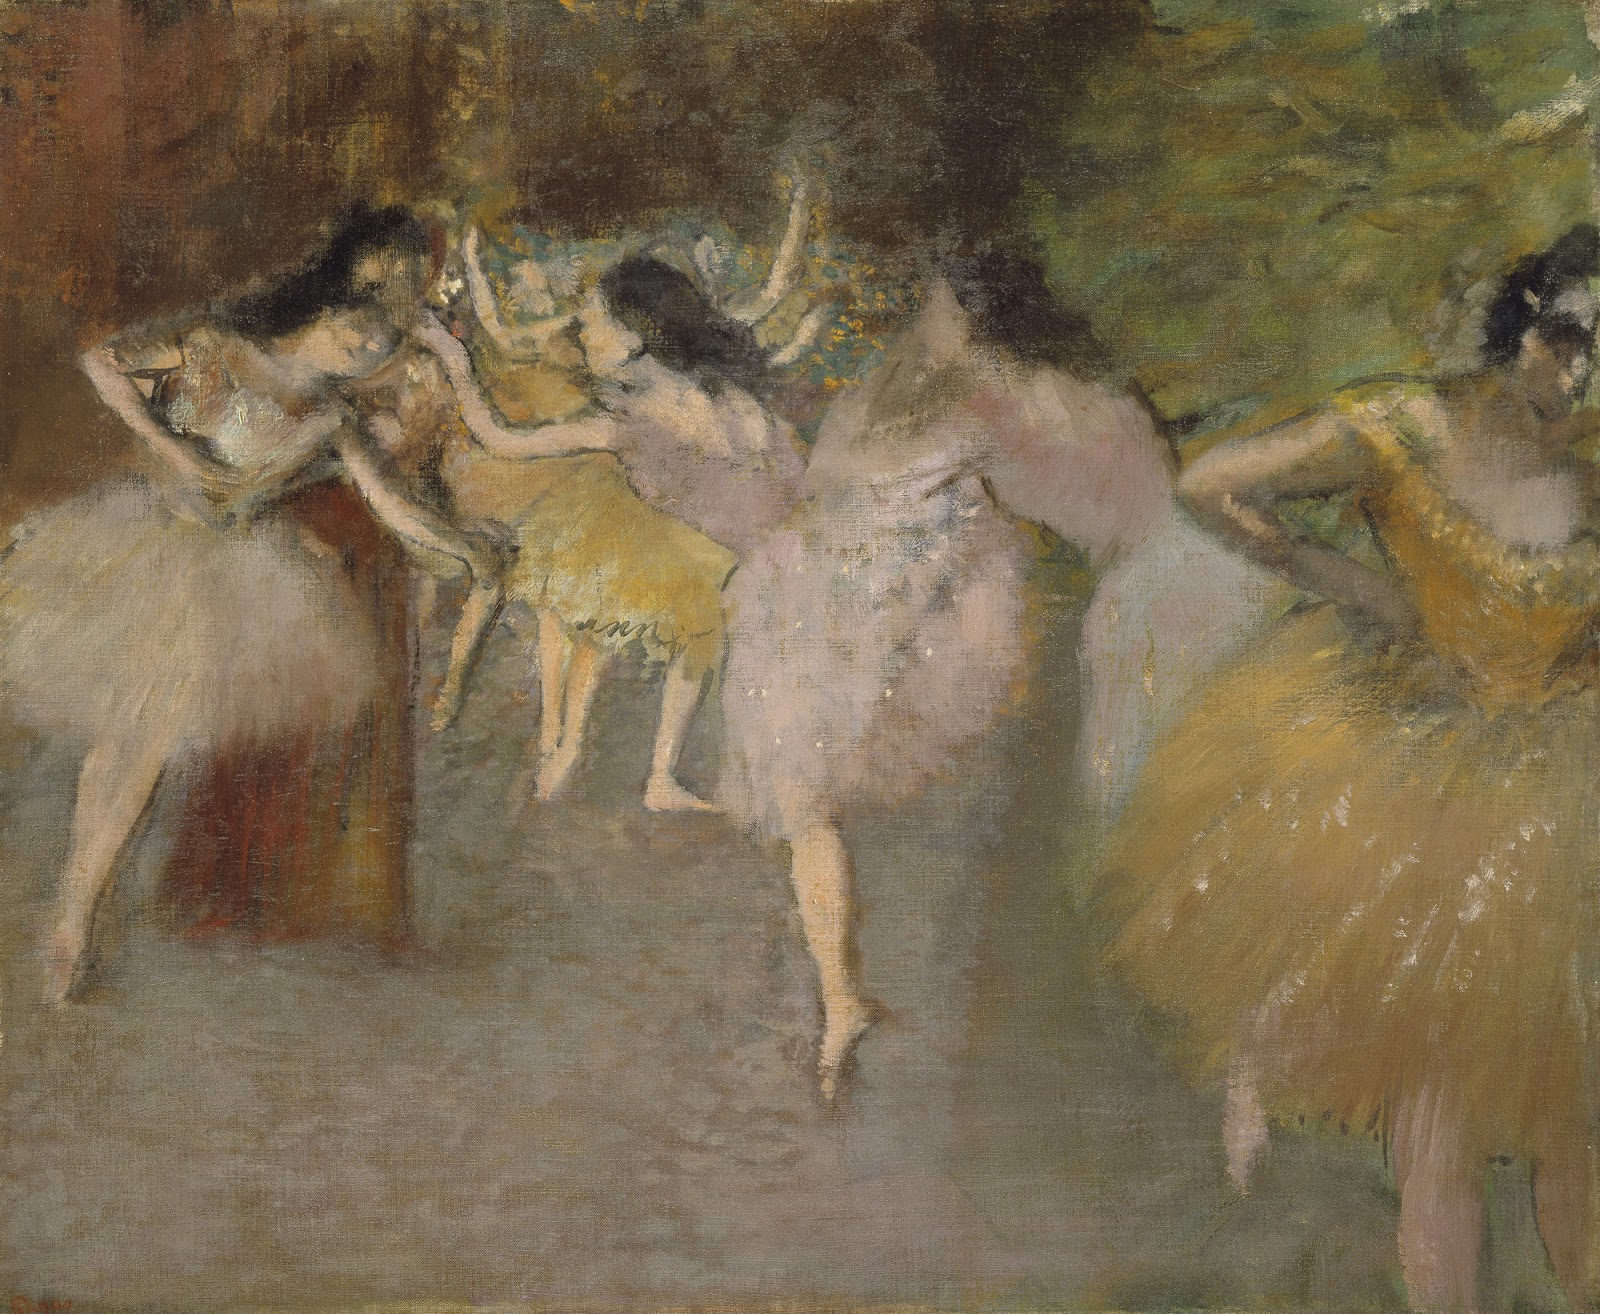 Edgar+Degas-1834-1917 (866).jpg